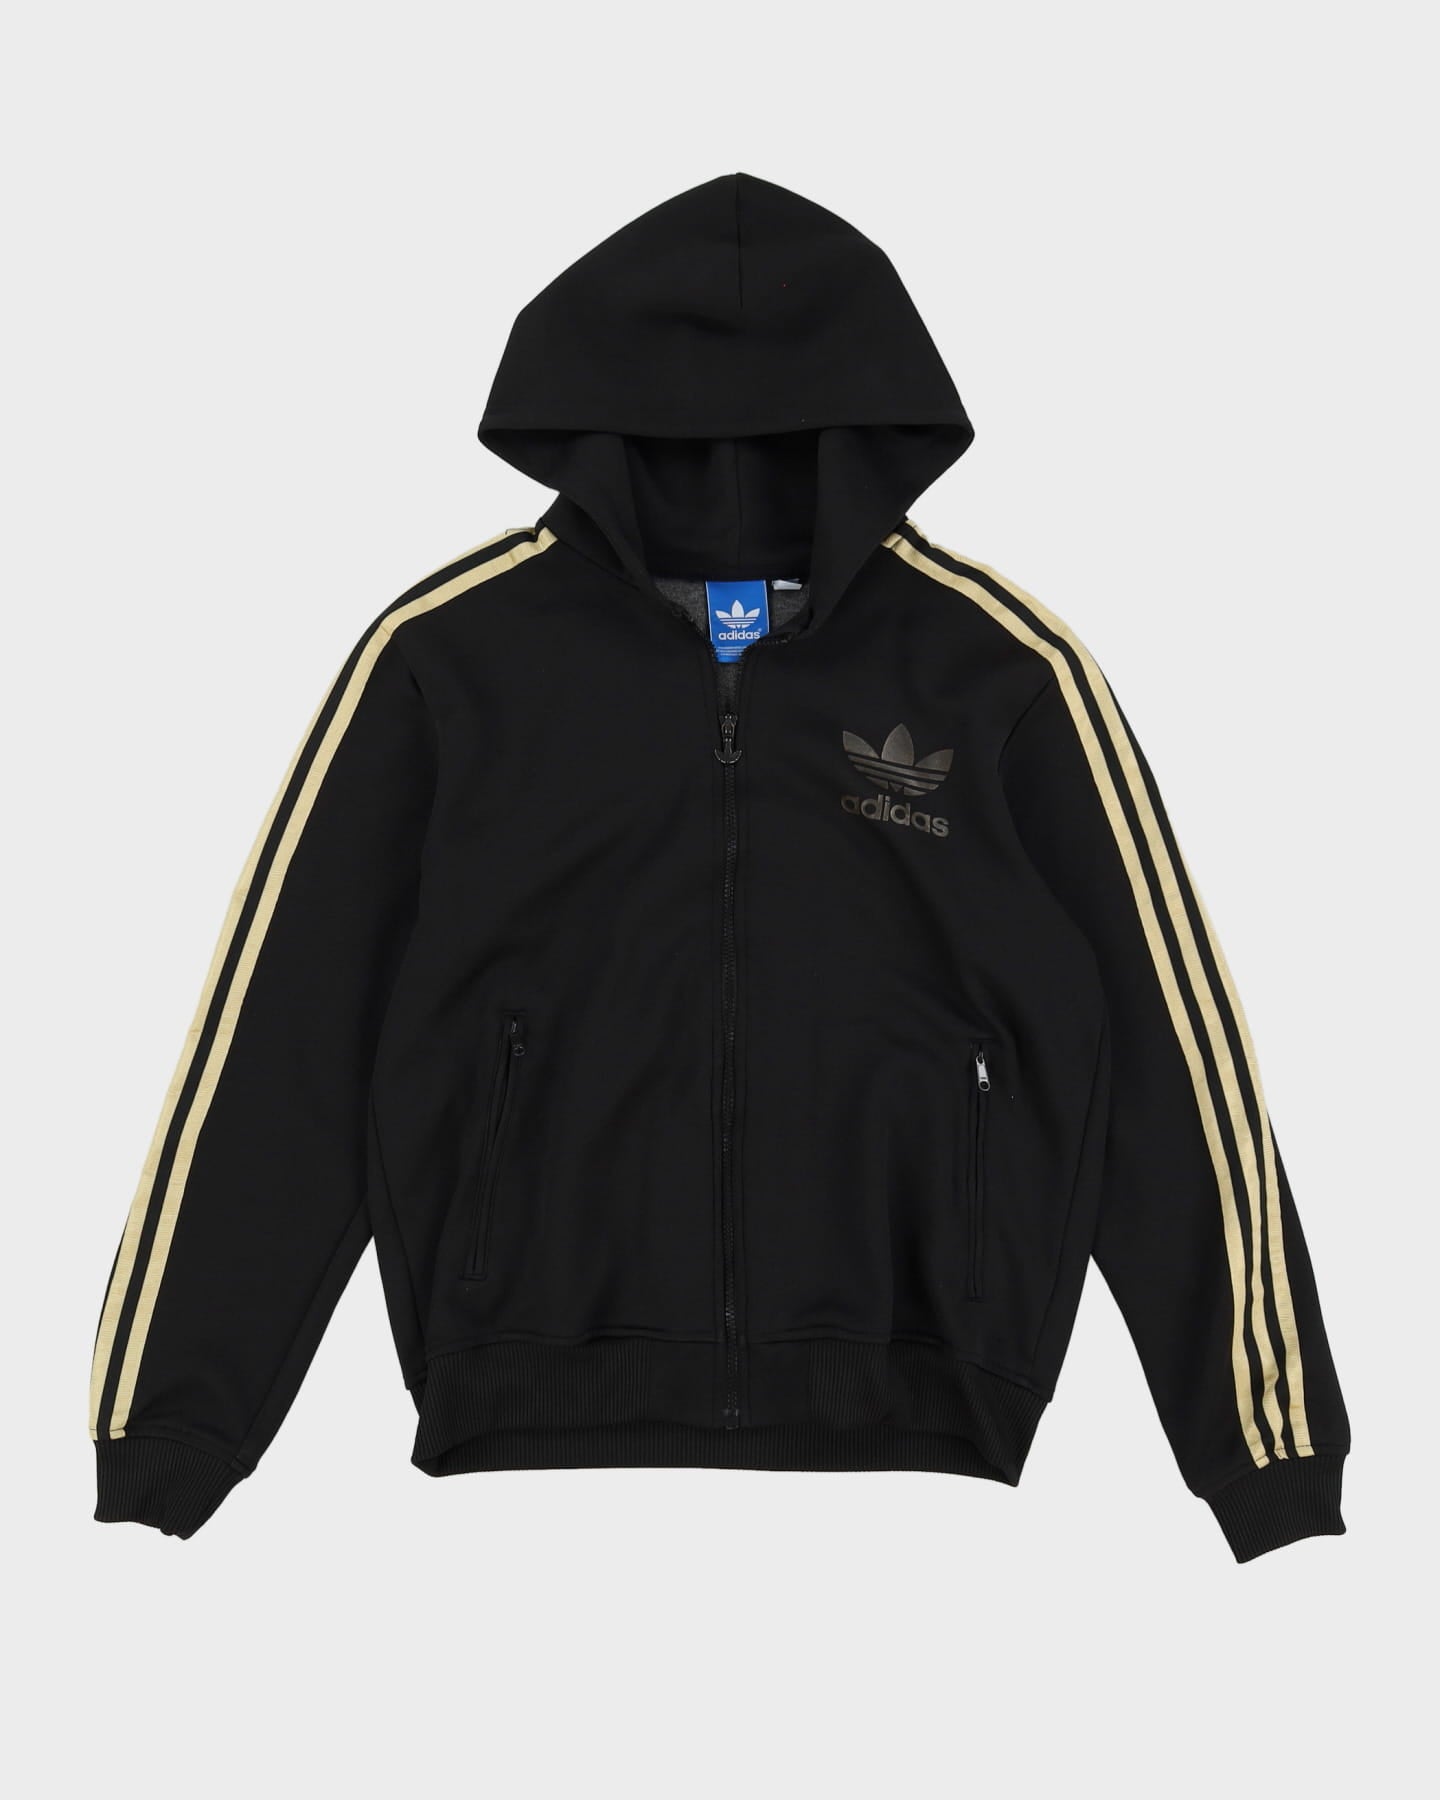 Adidas Black / Gold Track Jacket - S